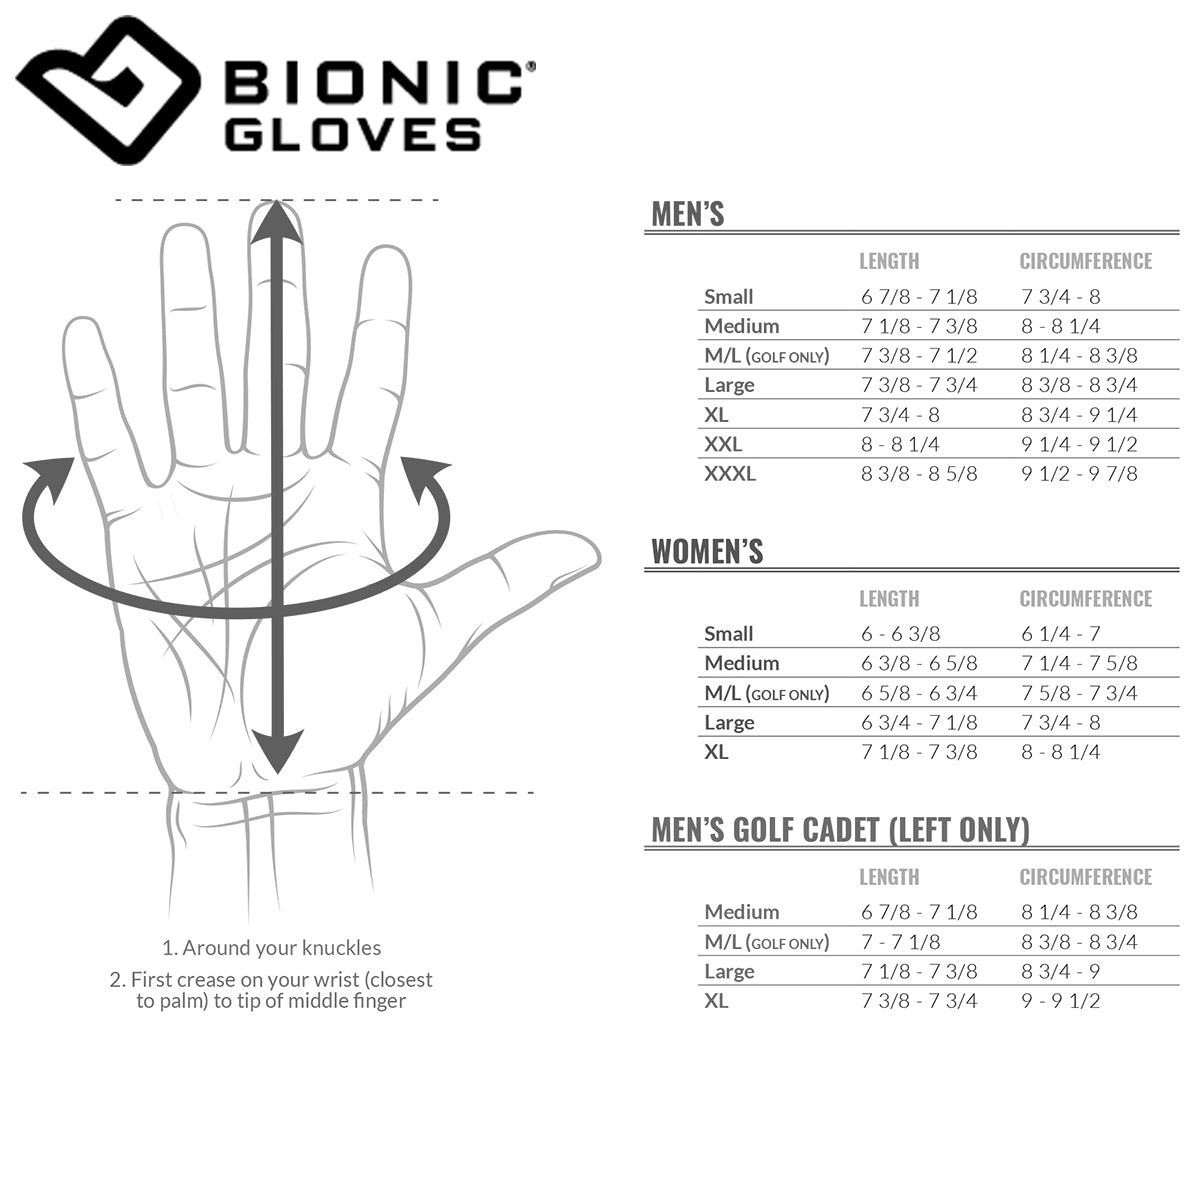 Bionic Men's BeastMode Fingerless Fitness Gloves - Black Bionic